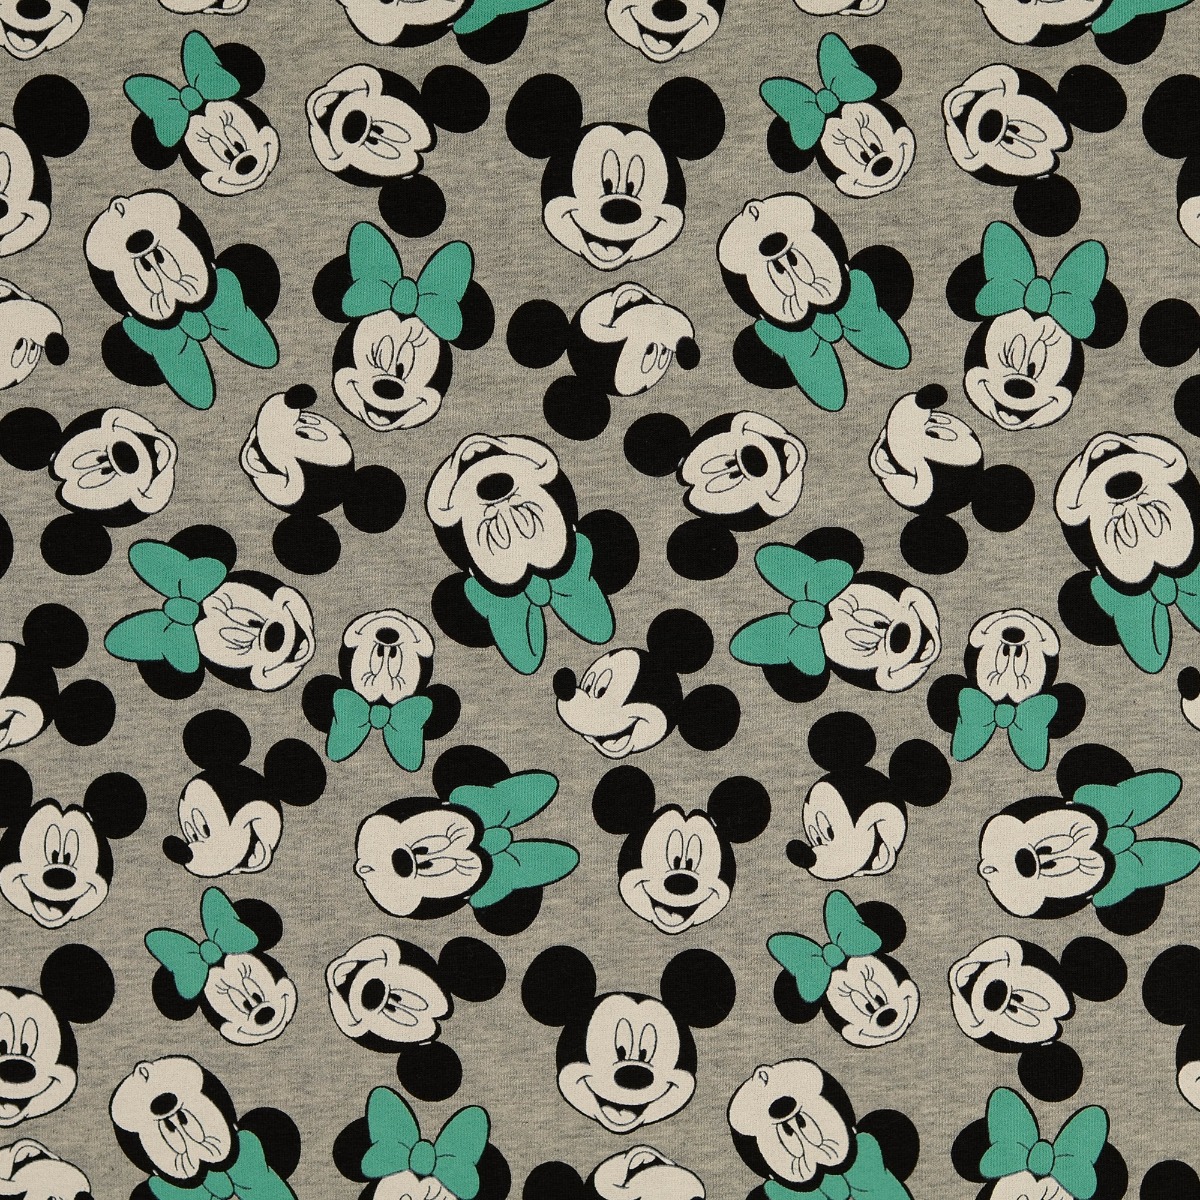 Ganzjahressweat Mickey und Minnie Mouse mit Dunkelmint Grau Meliert LIZENZ